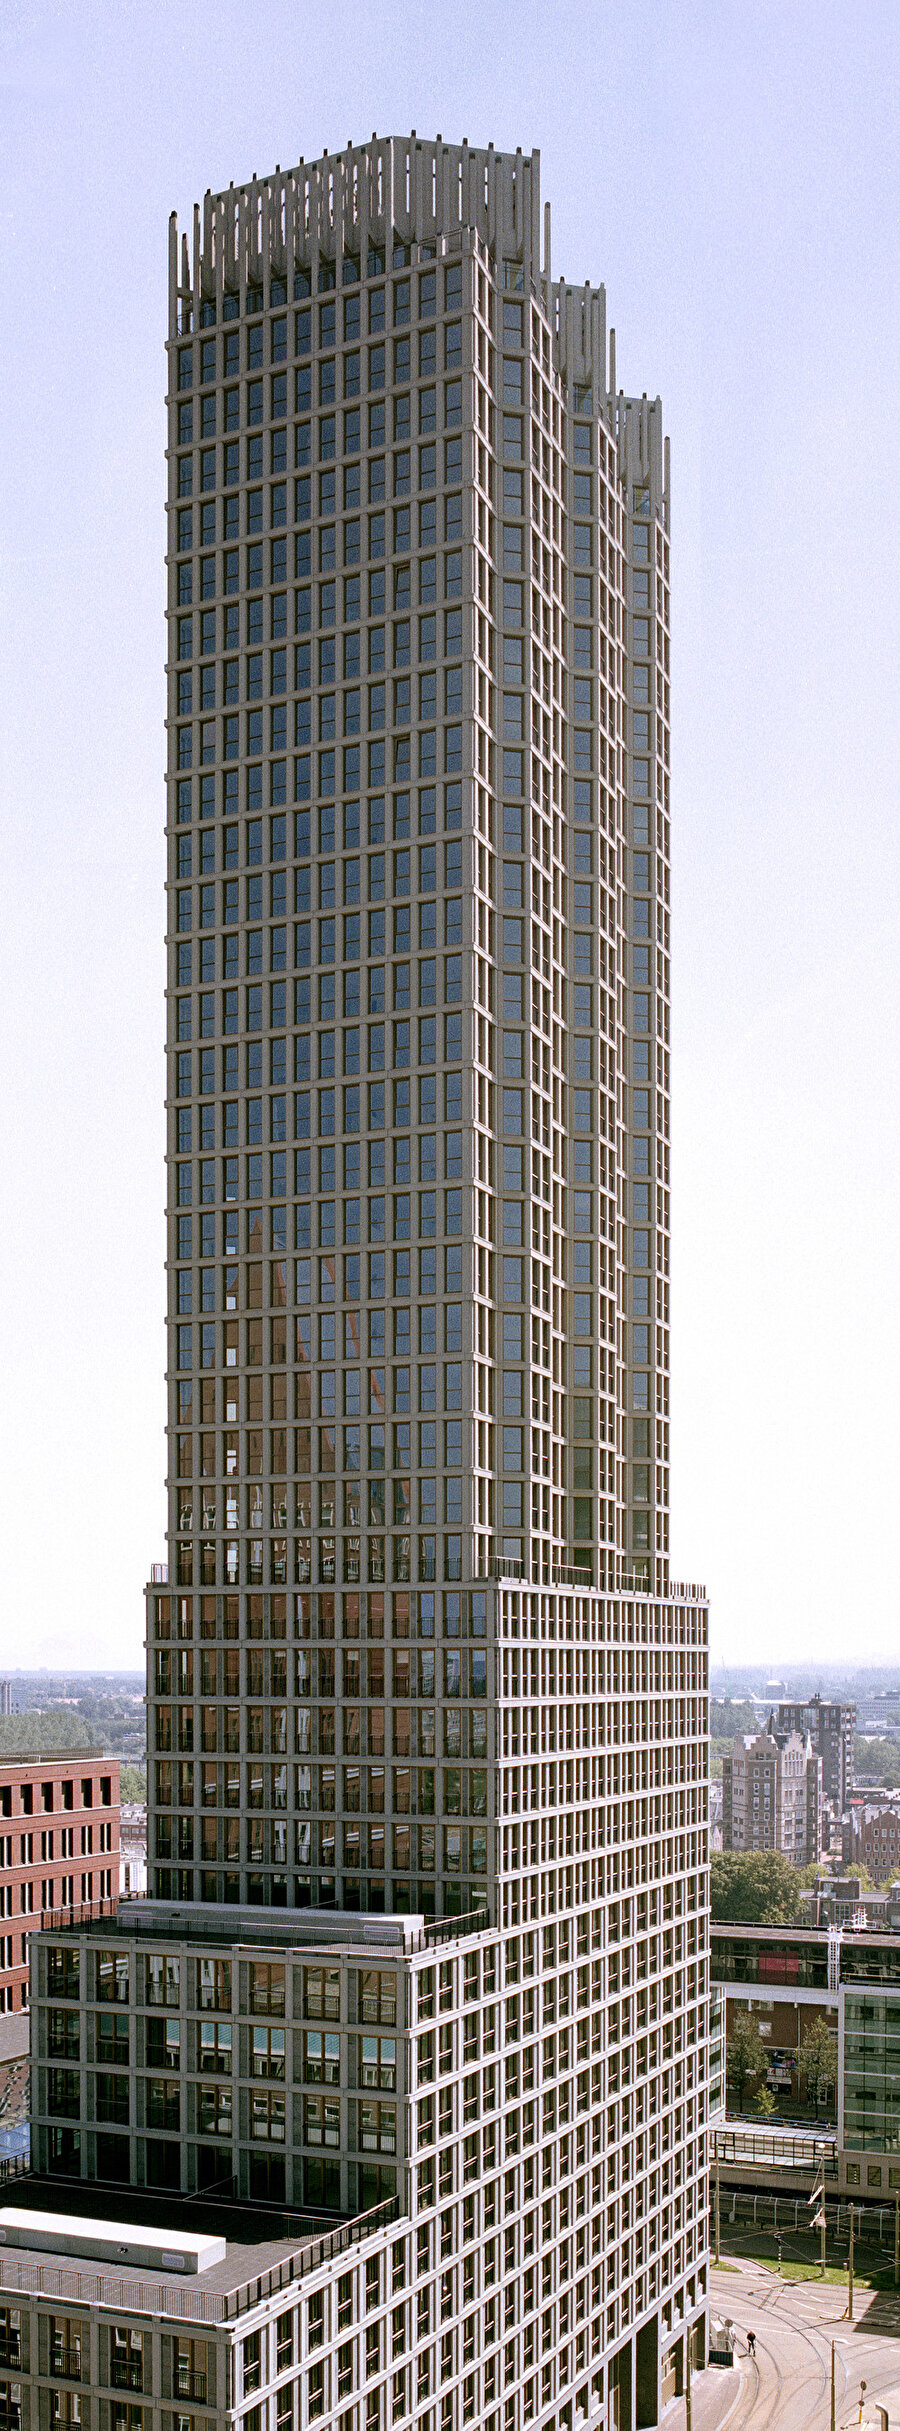 Yapının etrafında birçok yüksek katlı bina yer alıyor.